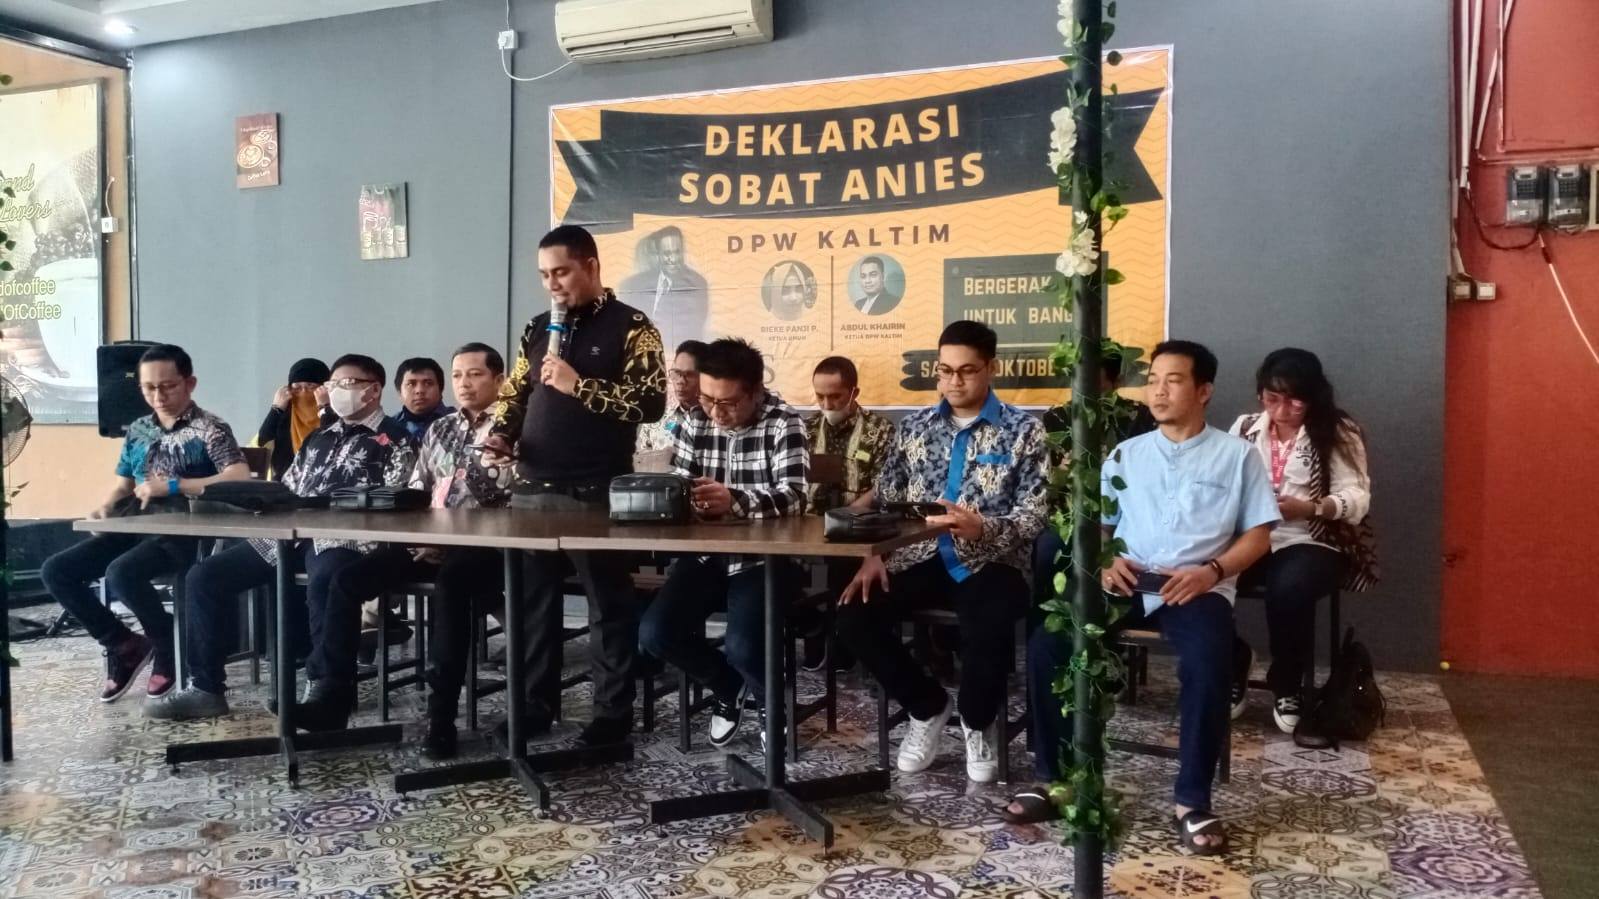 DPW Sobat Anies Baswedan Kaltim Dideklarasikan, Bakal Buka Rekrutmen Relawan